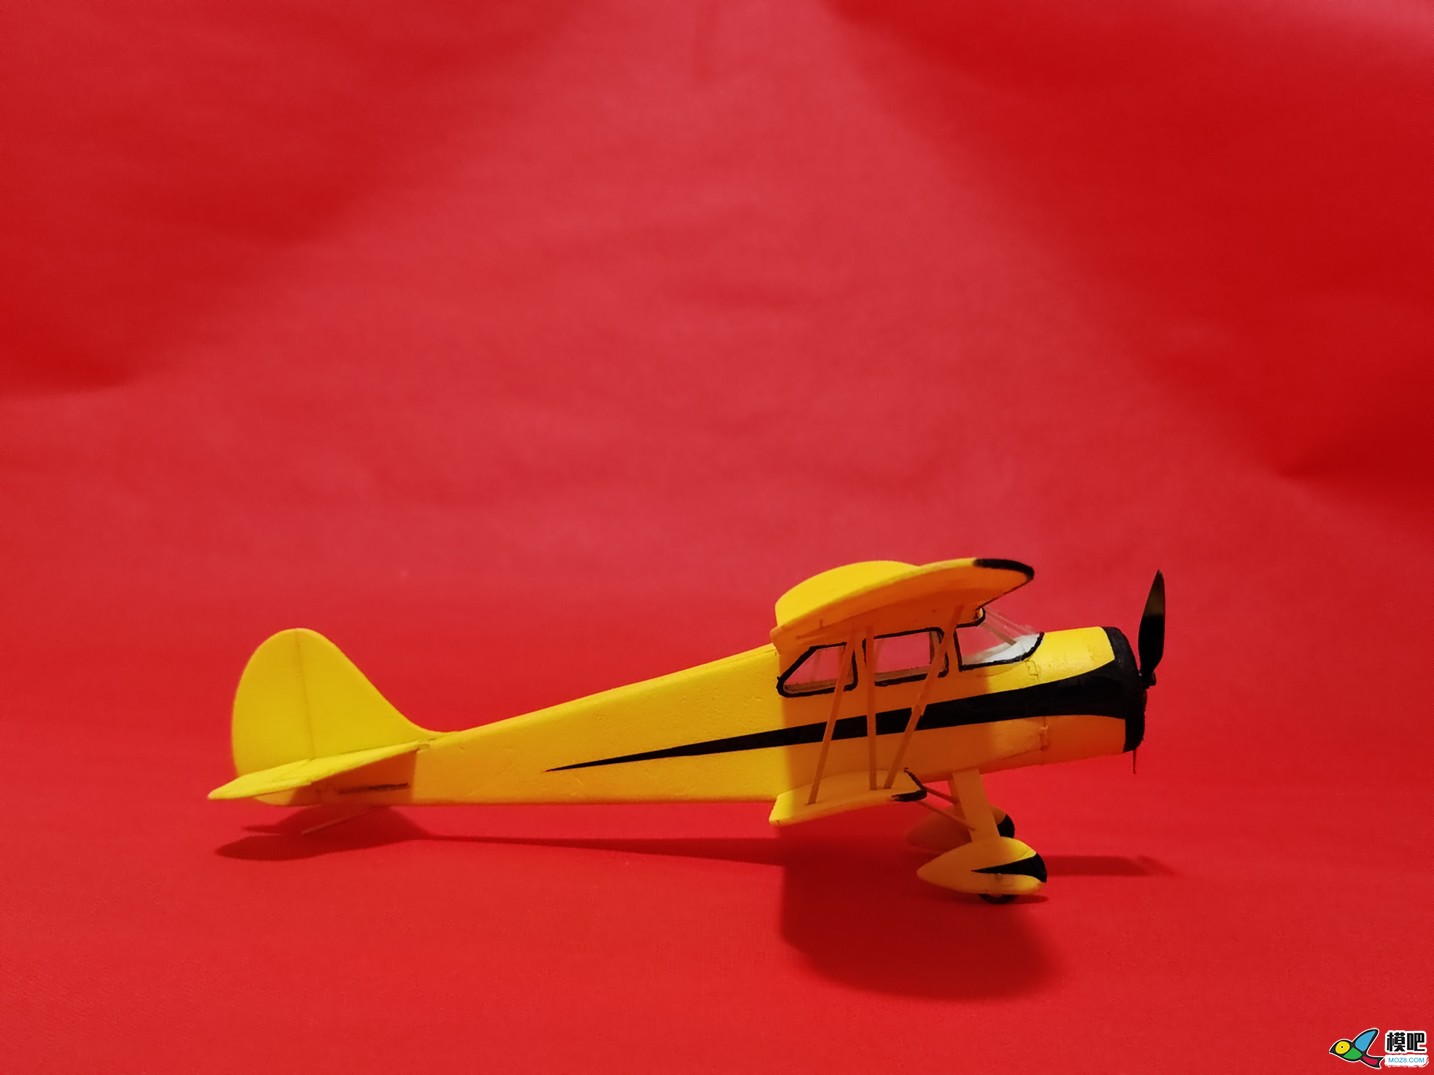 【爱因制造】自制WACO-SRE双翼机 电池,接收机,起飞重量,电池设备,双翼机 作者:xbnlkdbxl 3211 